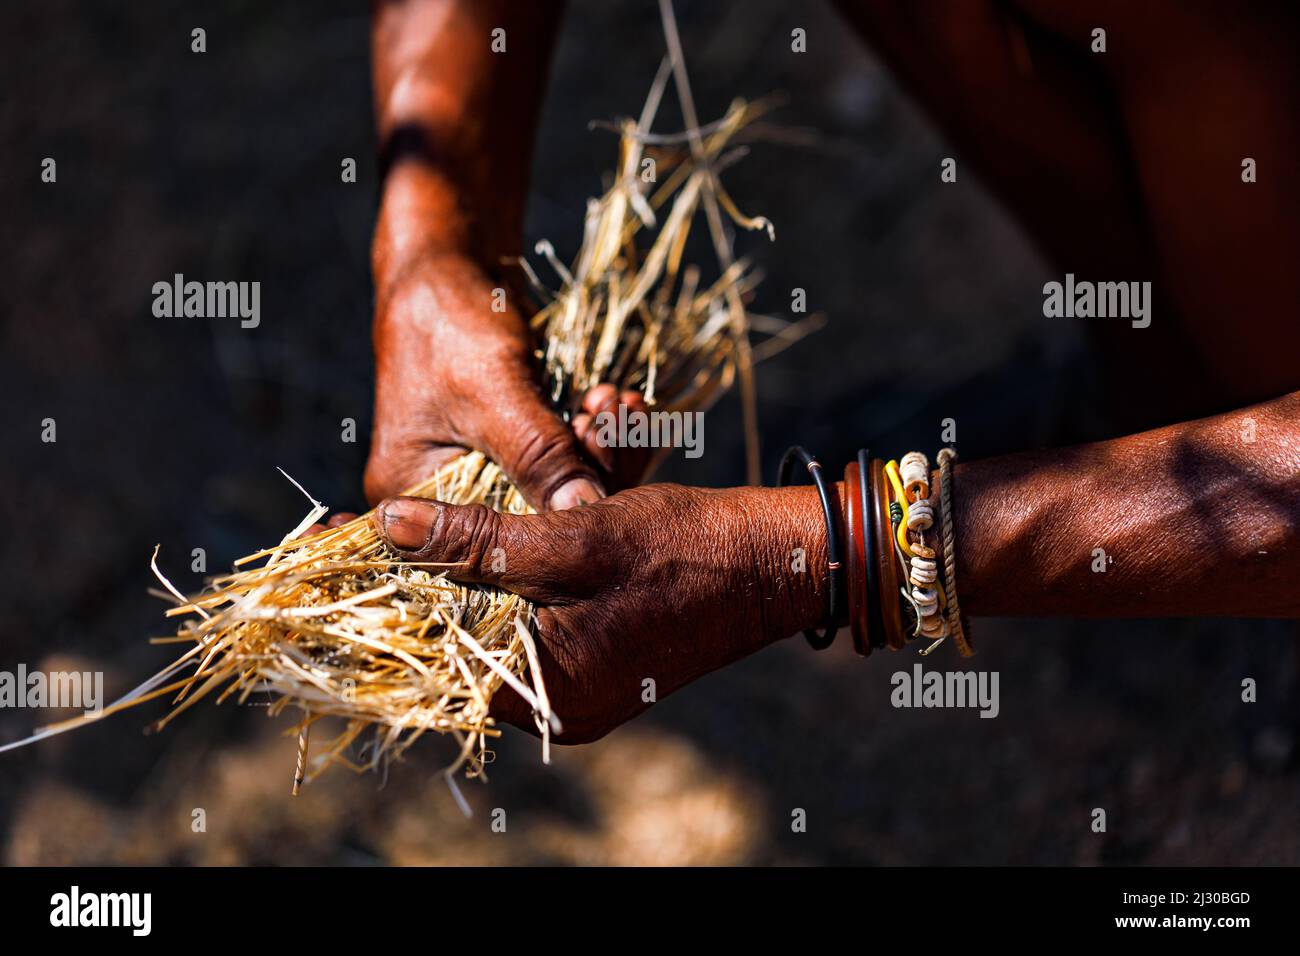 Un vieil homme aux mains distinctives recueille de la paille en Namibie, en Afrique Banque D'Images